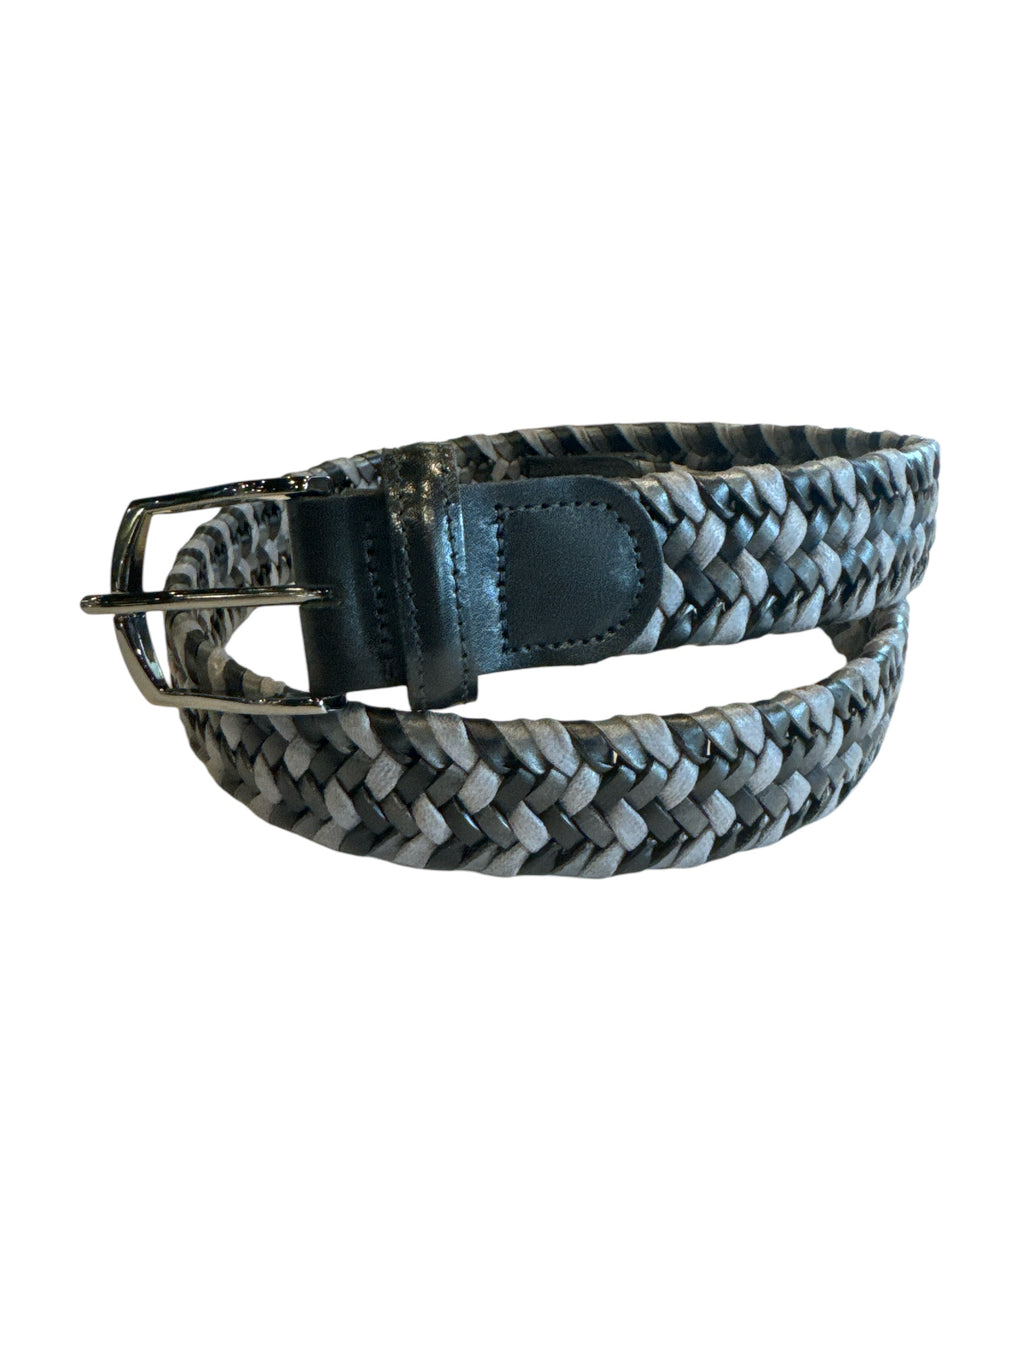 Bench Craft - Braided Belt -6230-1